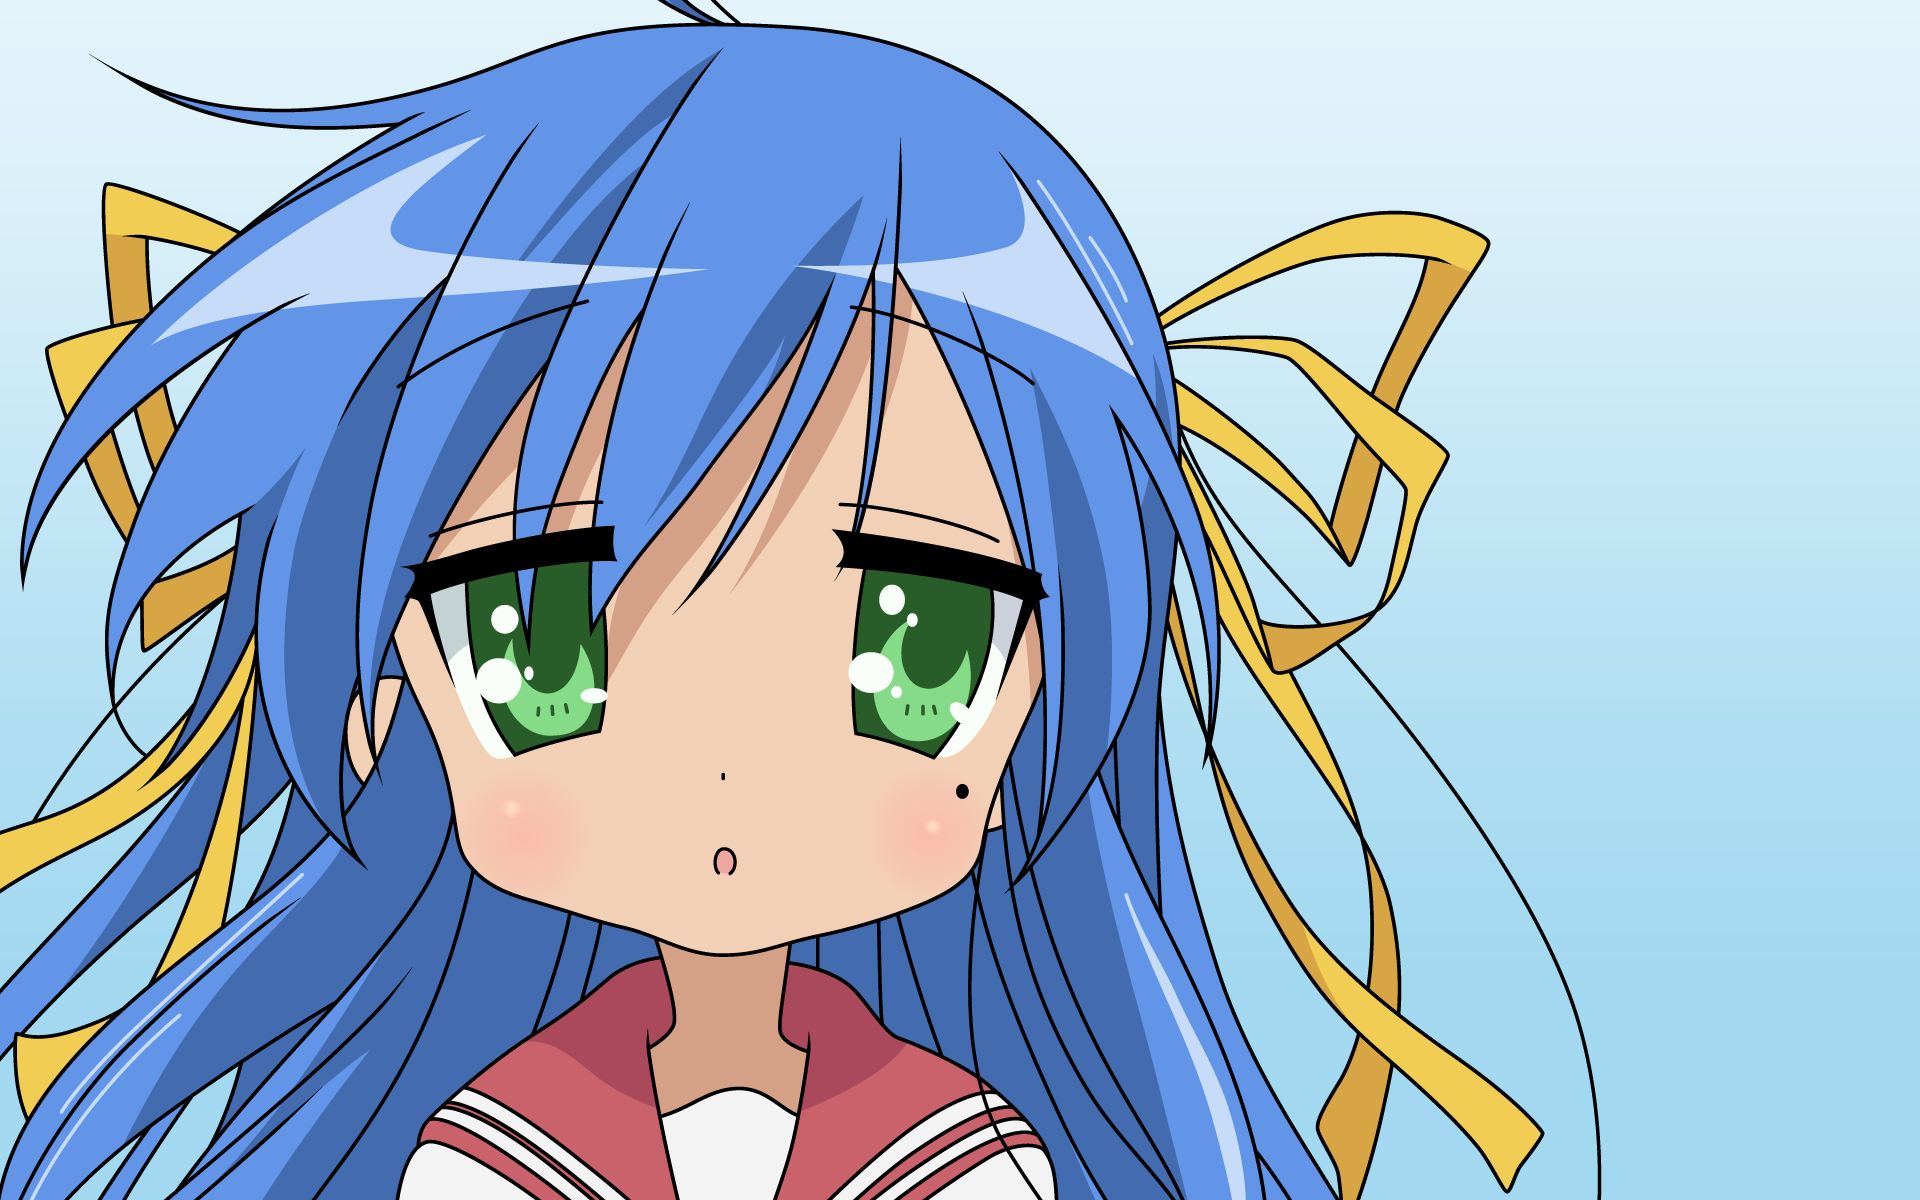 Baixe gratuitamente a imagem Anime, Raki Suta: Lucky Star, Konata Izumi na área de trabalho do seu PC